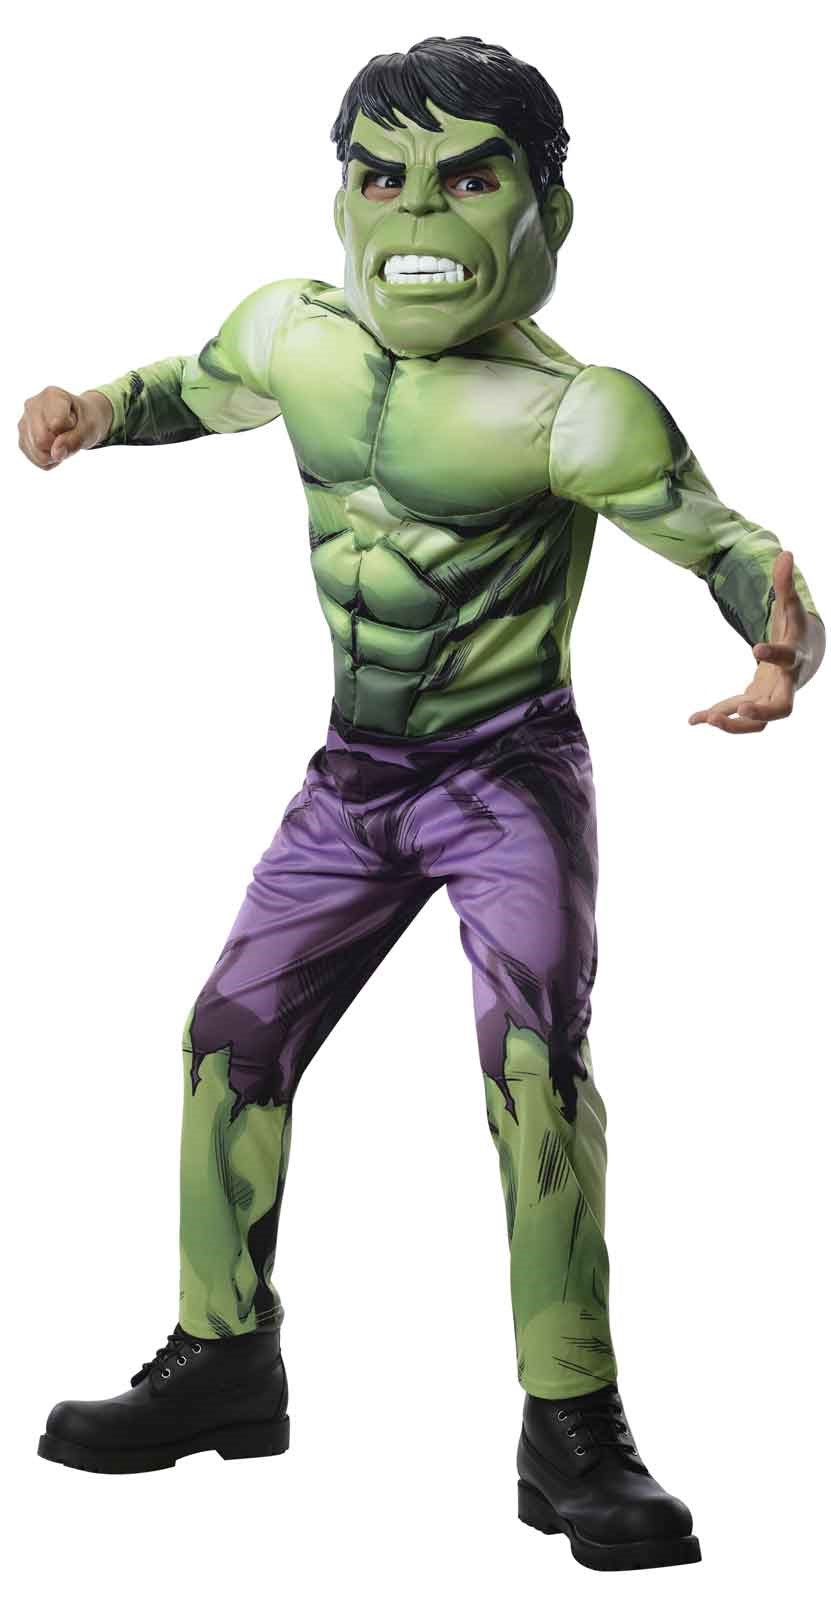 Avengers Assemble Deluxe Hulk Kids Costume